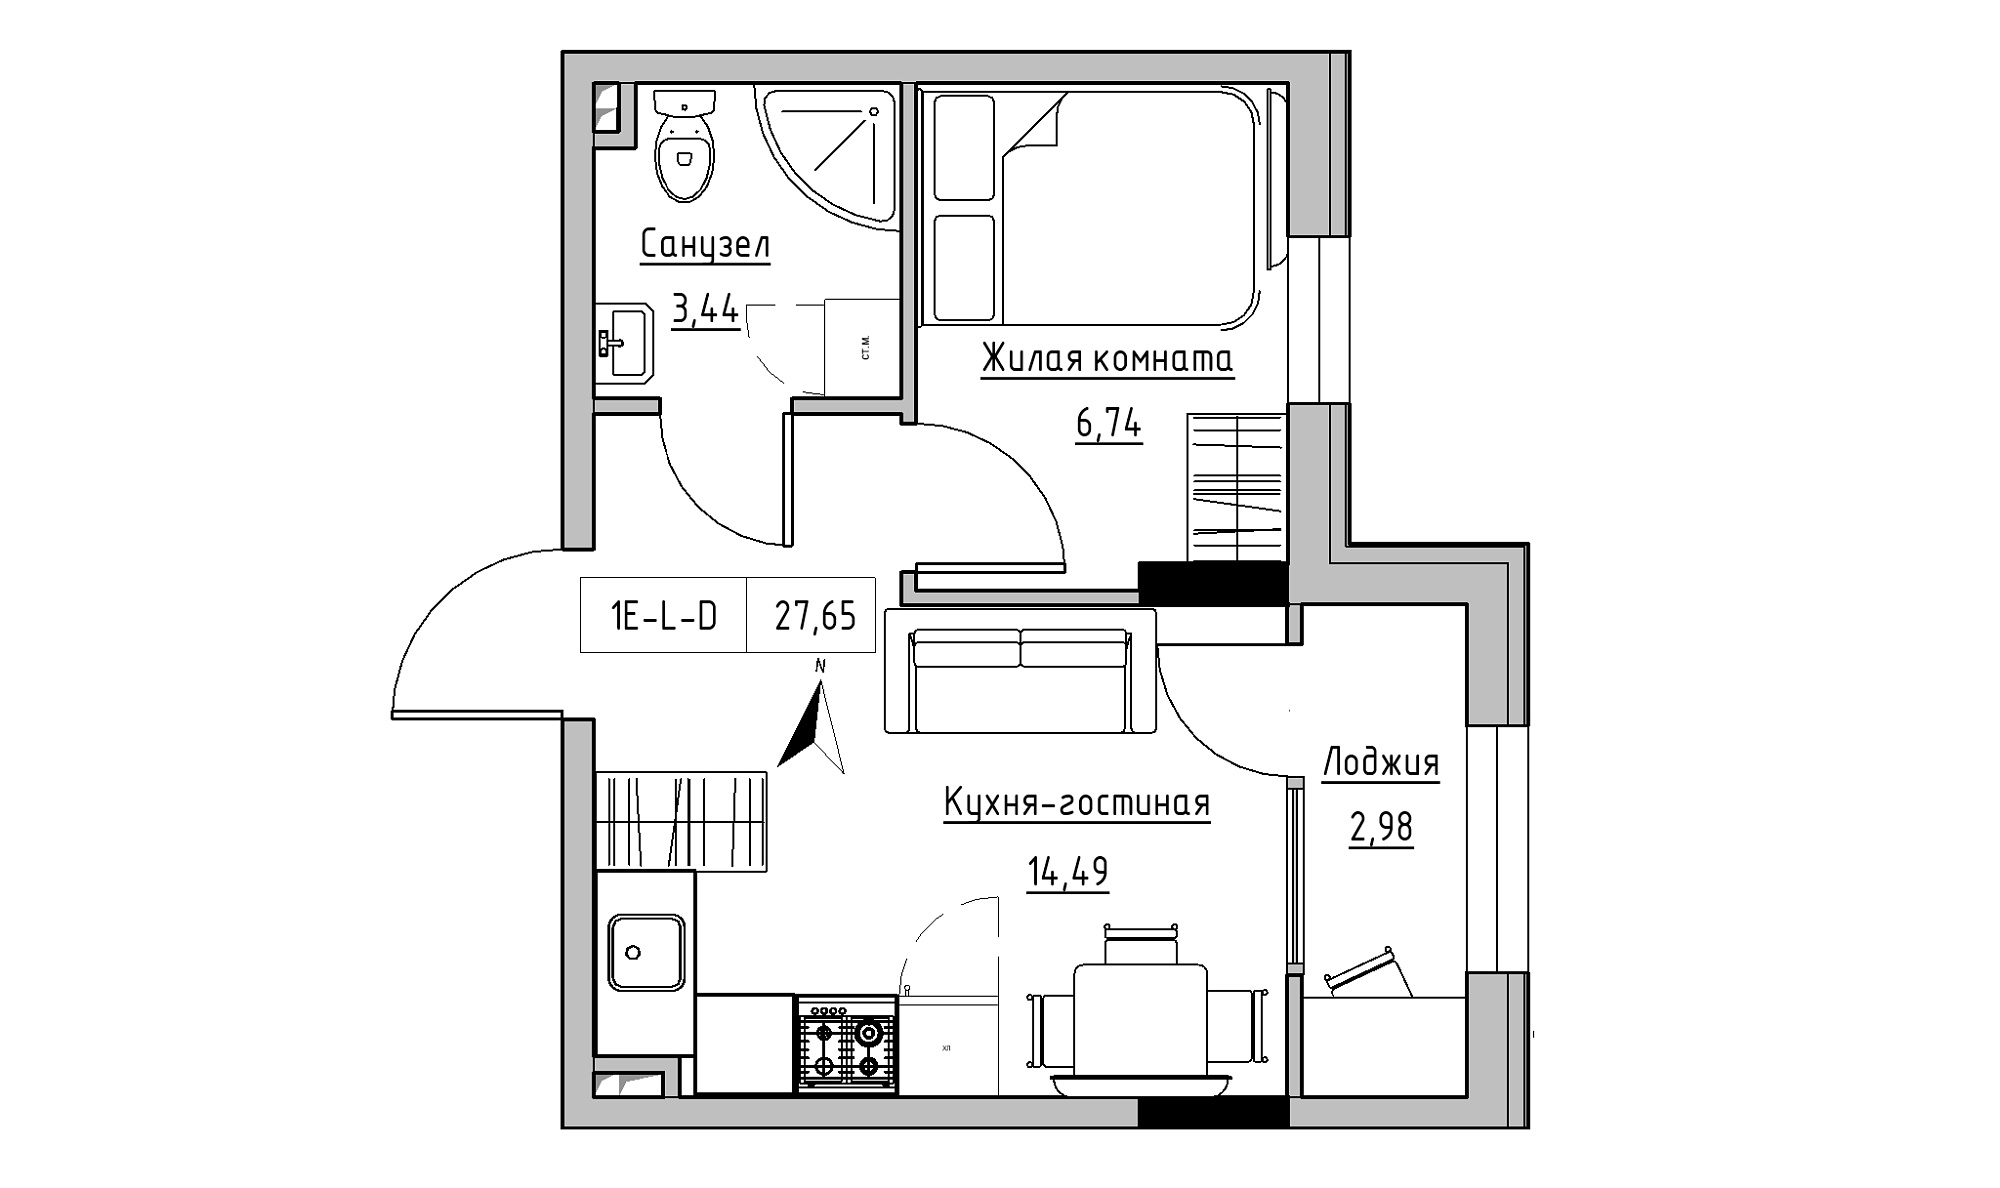 Планування 1-к квартира площею 27.65м2, KS-025-01/0001.